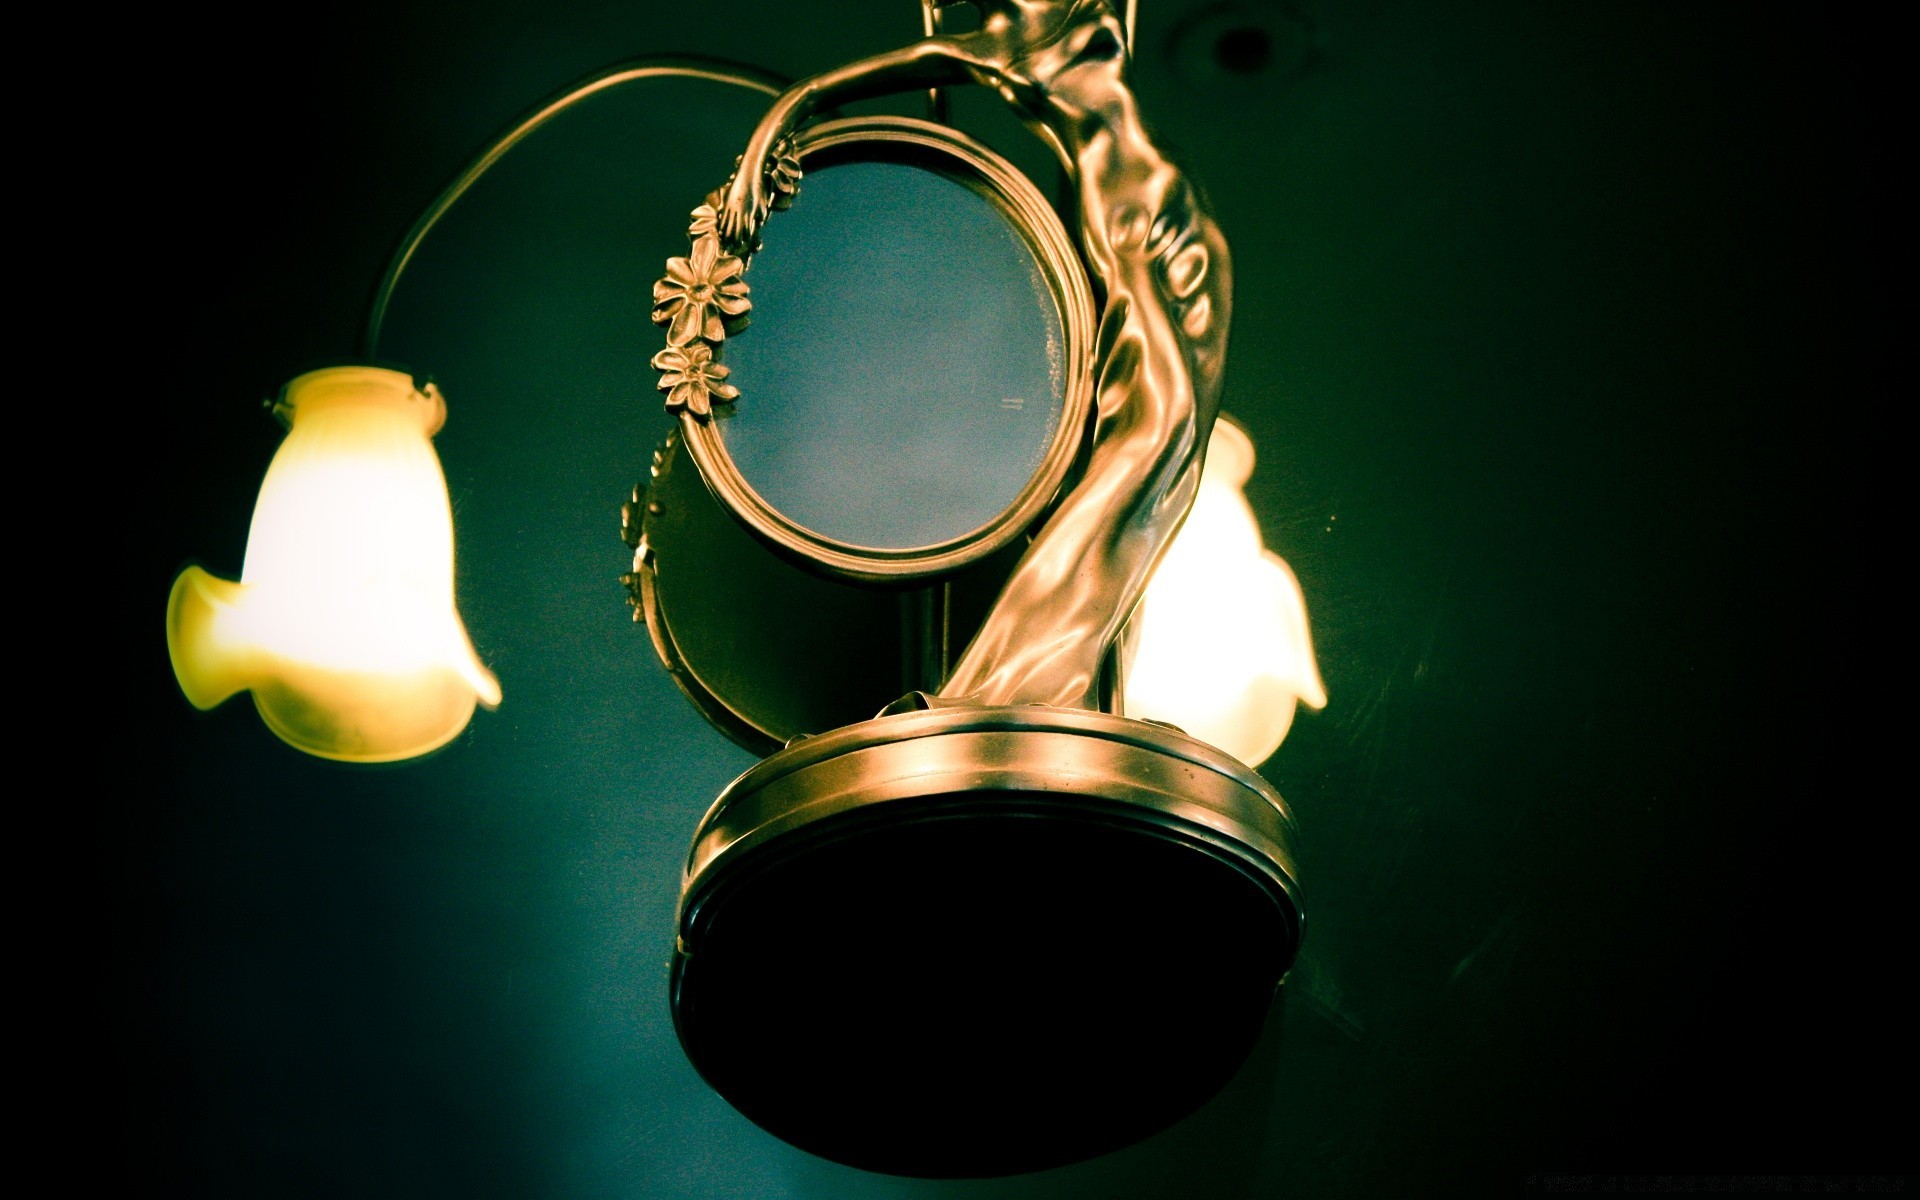 винтаж лампа лампы свет золото рабочего стола яркий темный стекло